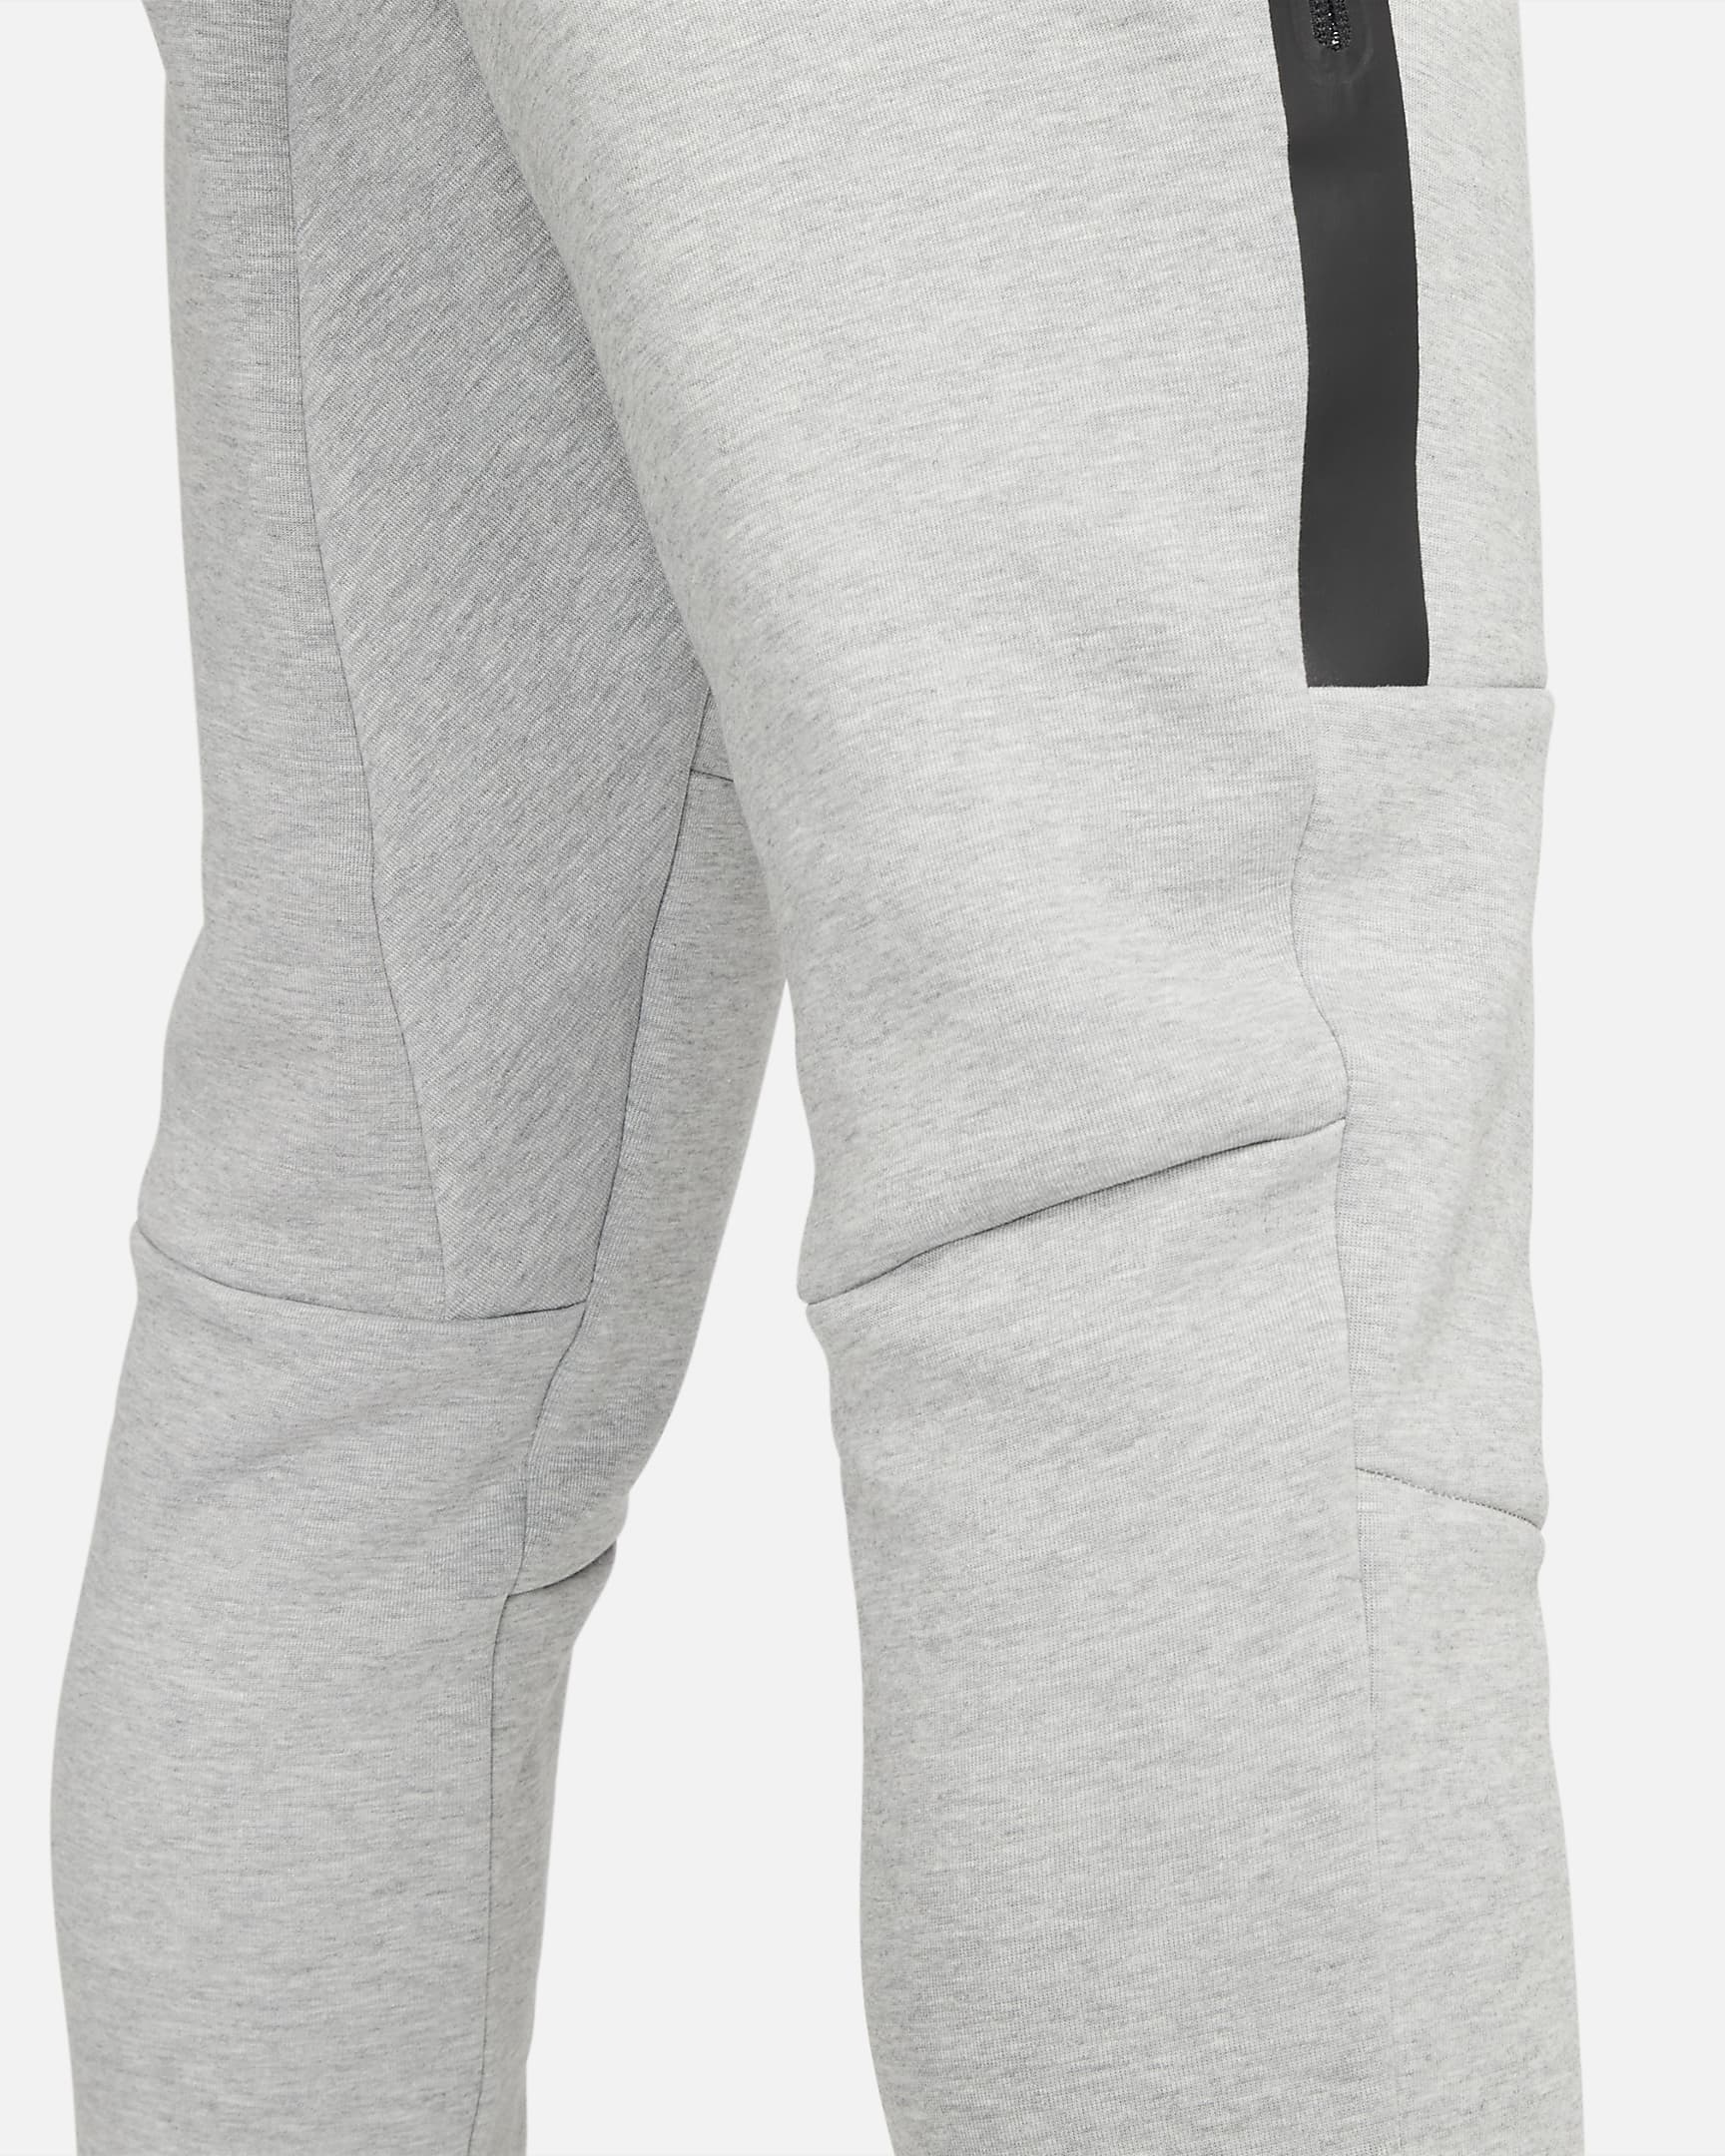 Nike Sportswear Tech Fleece OG Men's Slim Fit Joggers. Nike AT